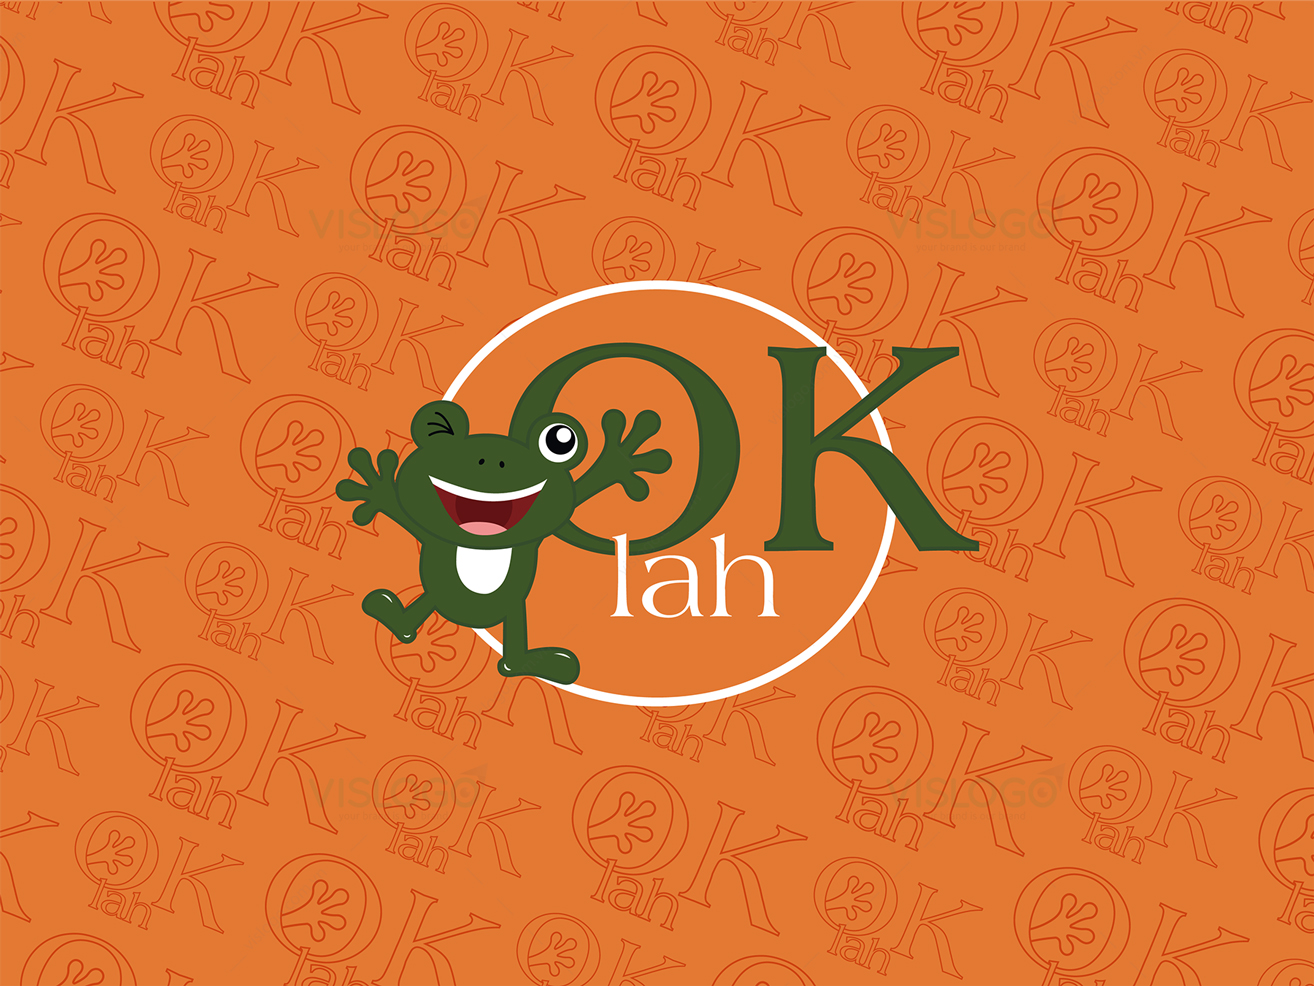 Thiết kế logo và nhận diện thương hiệu CHÁO ẾCH SINGAPORE OKLAH